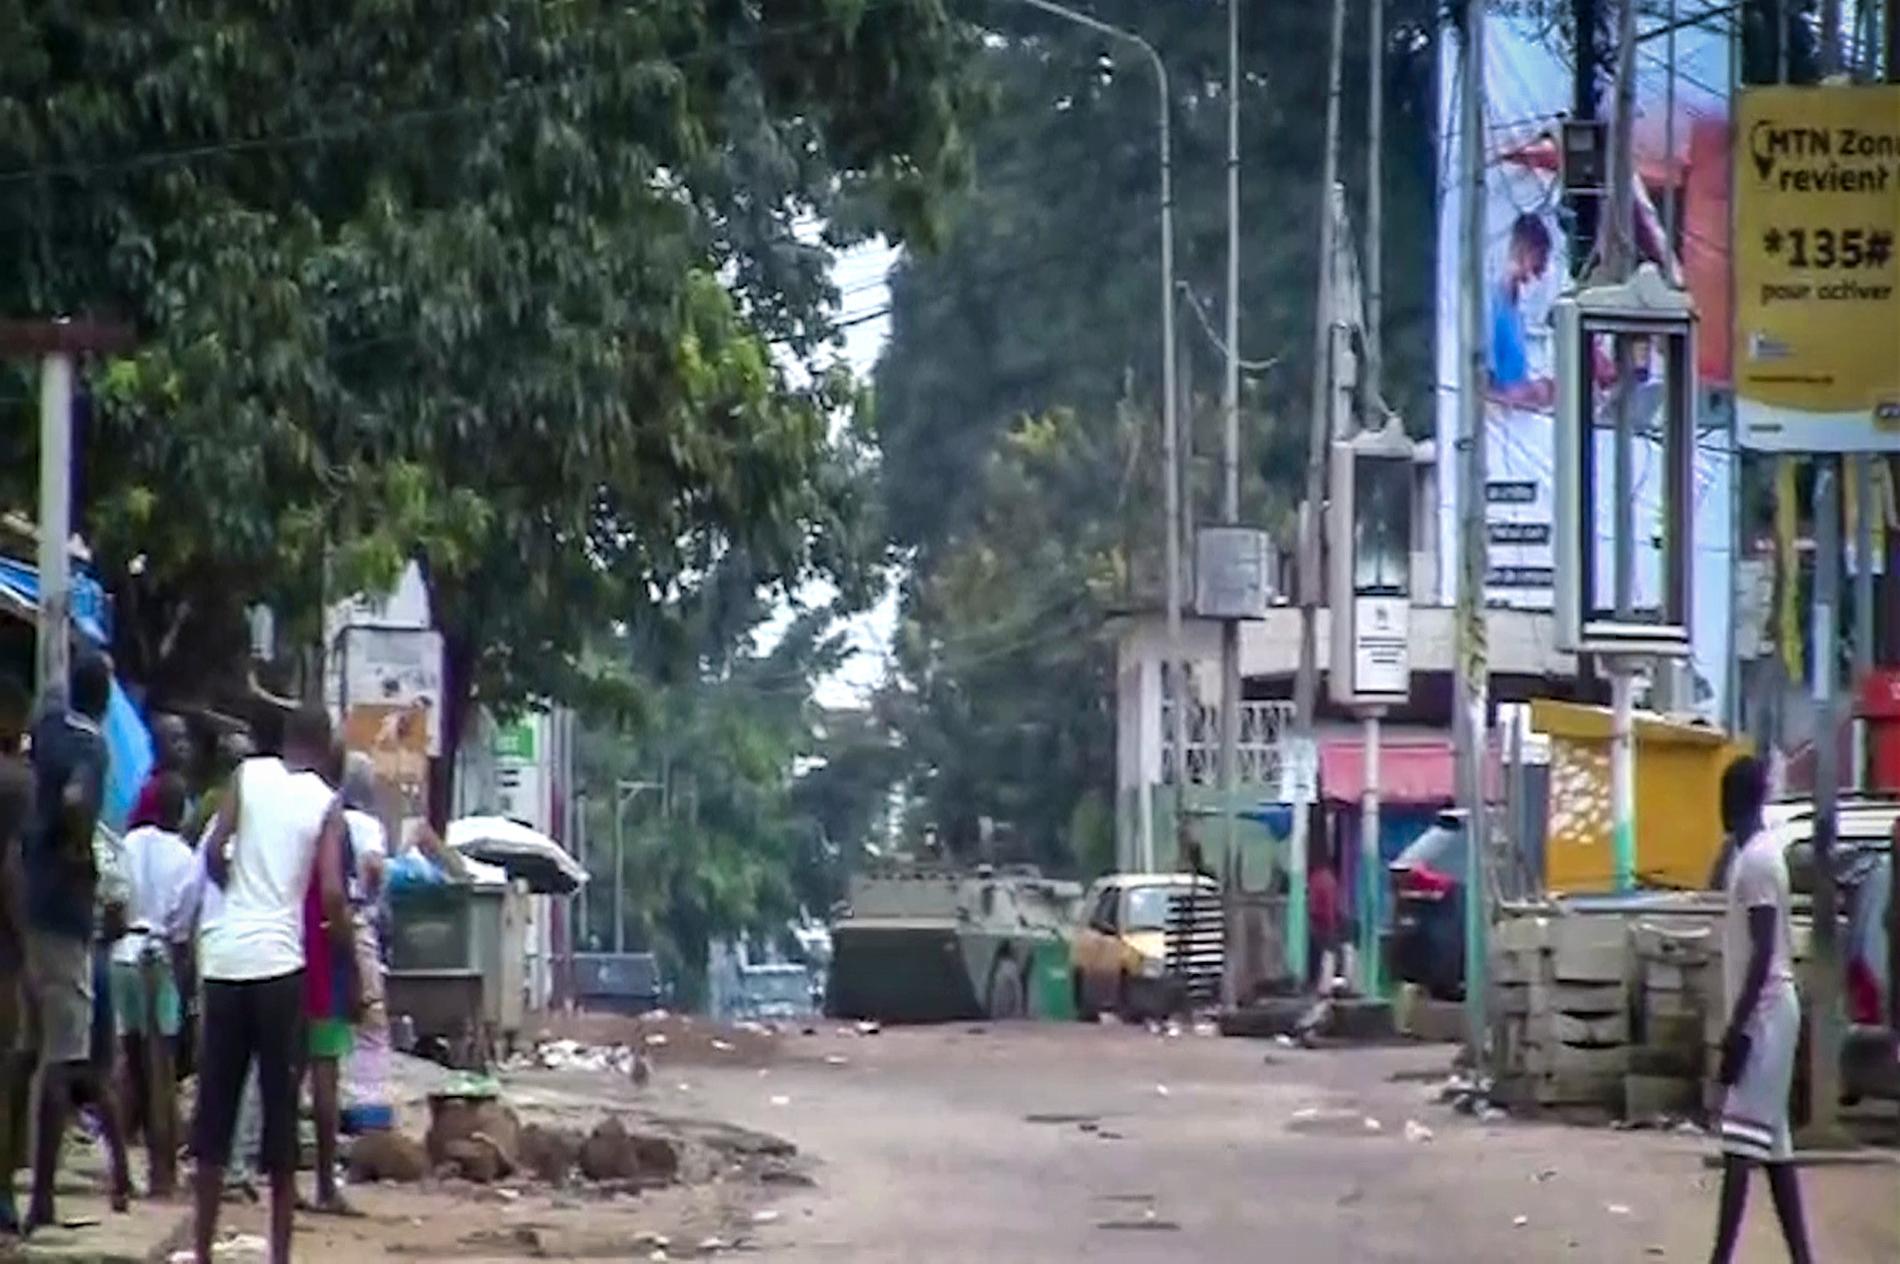 På bilder och filmer från Guineas huvudstad Conakry syns militärfordon på gatorna under söndagen. Det rapporteras om skottlossning. 